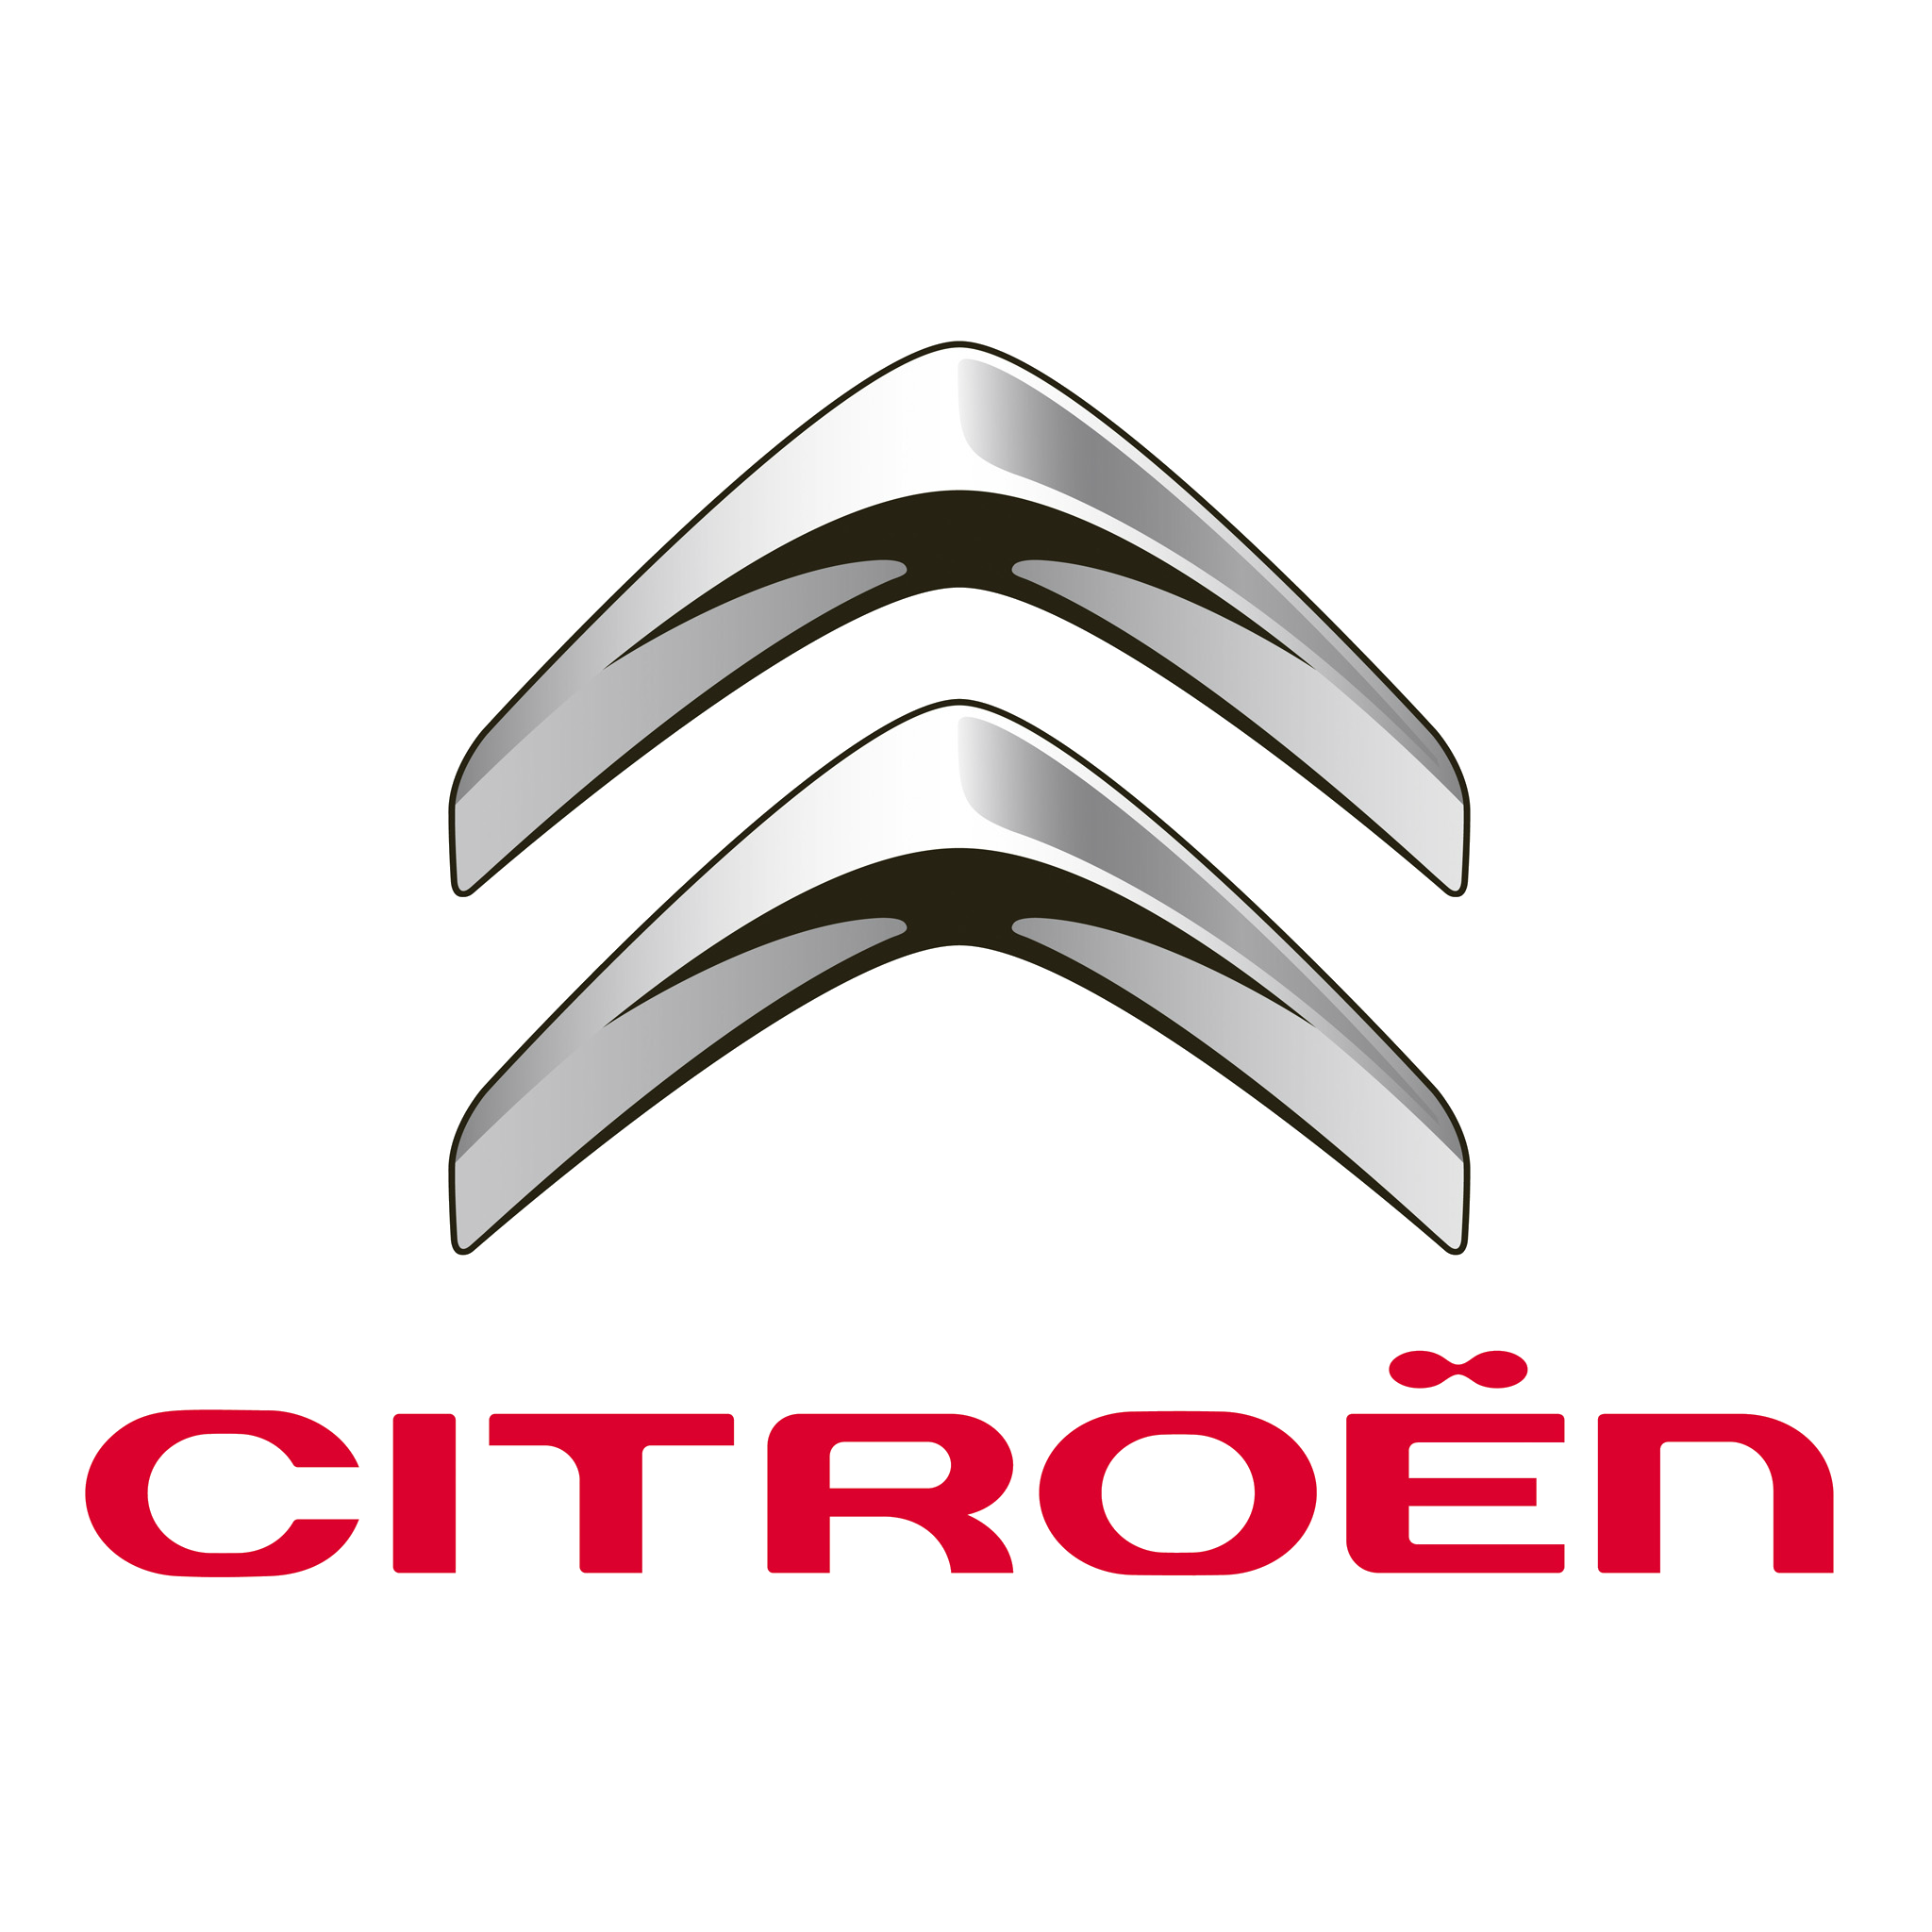 Citroen Logo Png - KibrisPDR